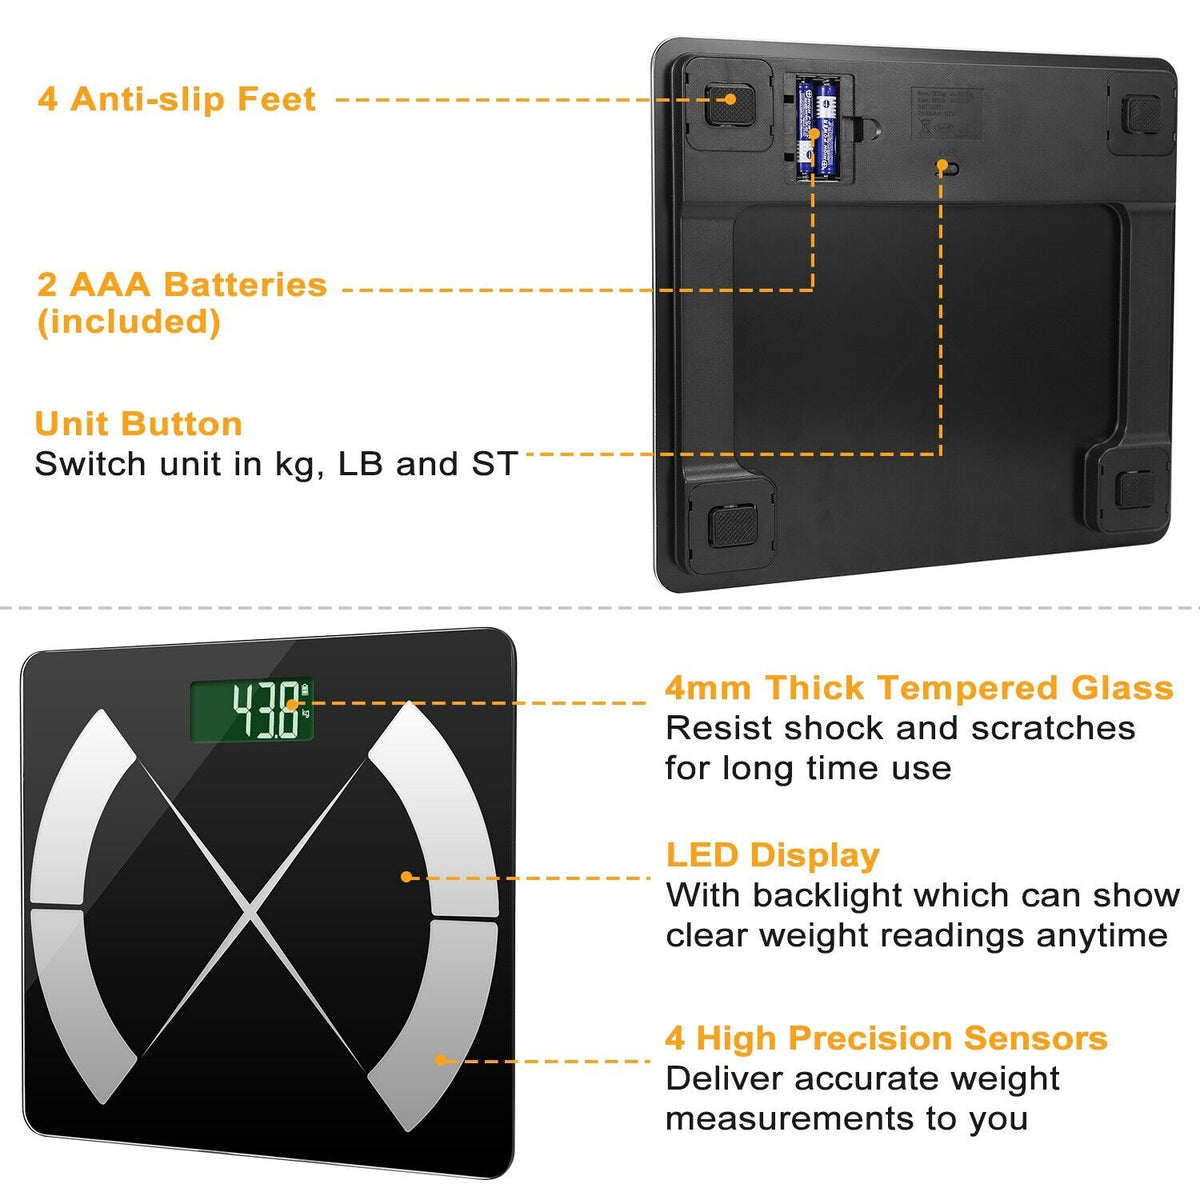 Smart Body Fat Monitor & Fitness Analyzer - Wireless Digital Scale